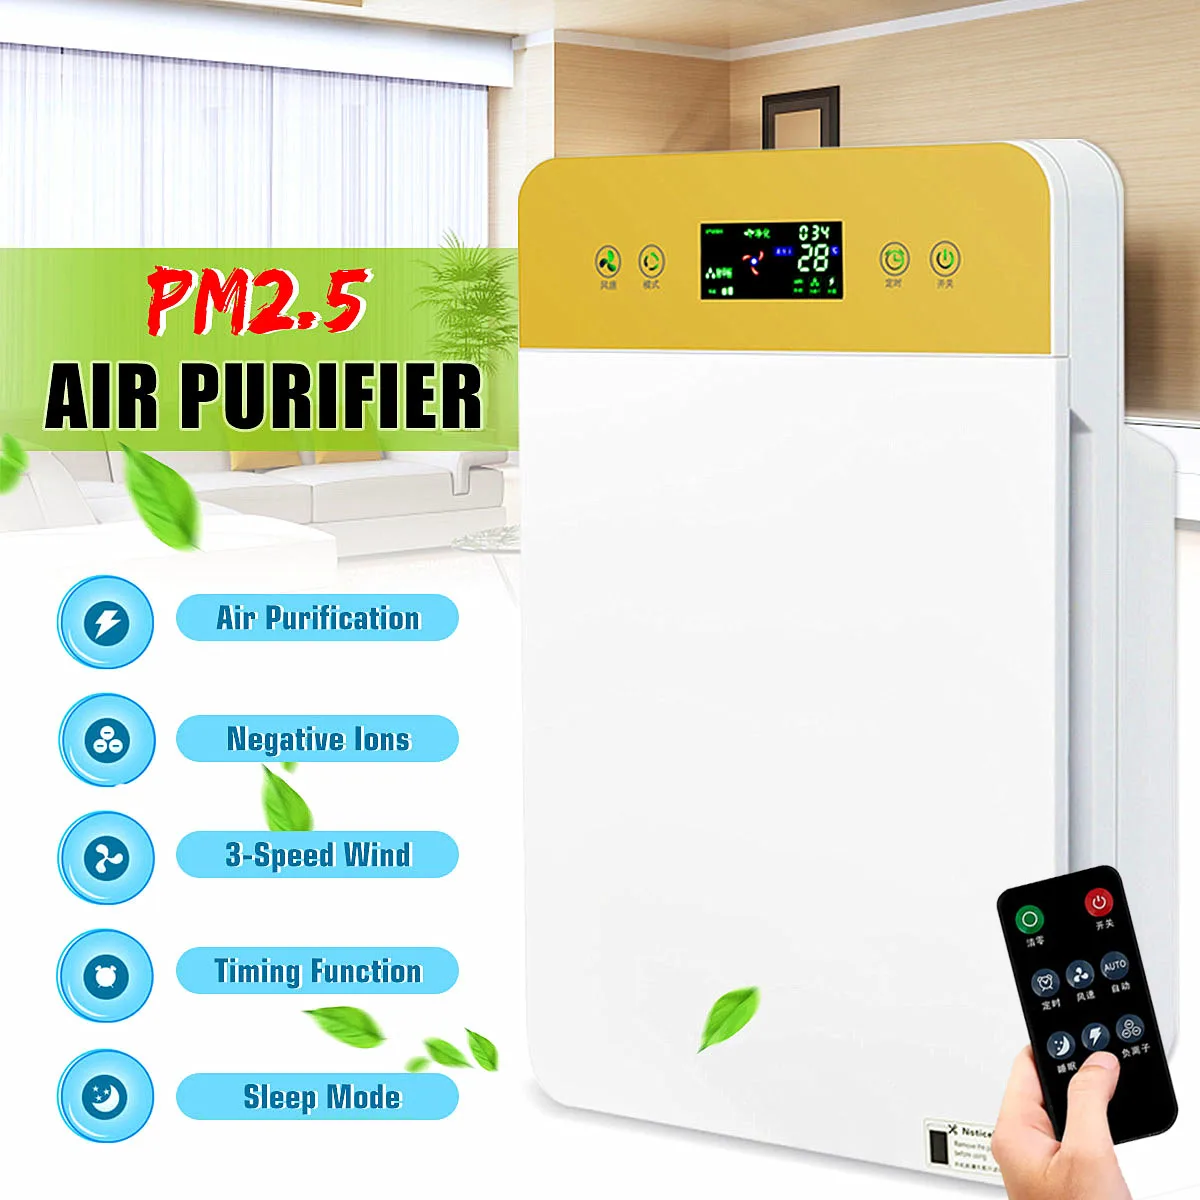 HEPA фильтр, обновленный очиститель воздуха, 220 В, очиститель воздуха для дома и офиса, ионизатор РМ2, 5, очиститель воздуха для стерилизации, удаление запаха формальдегида